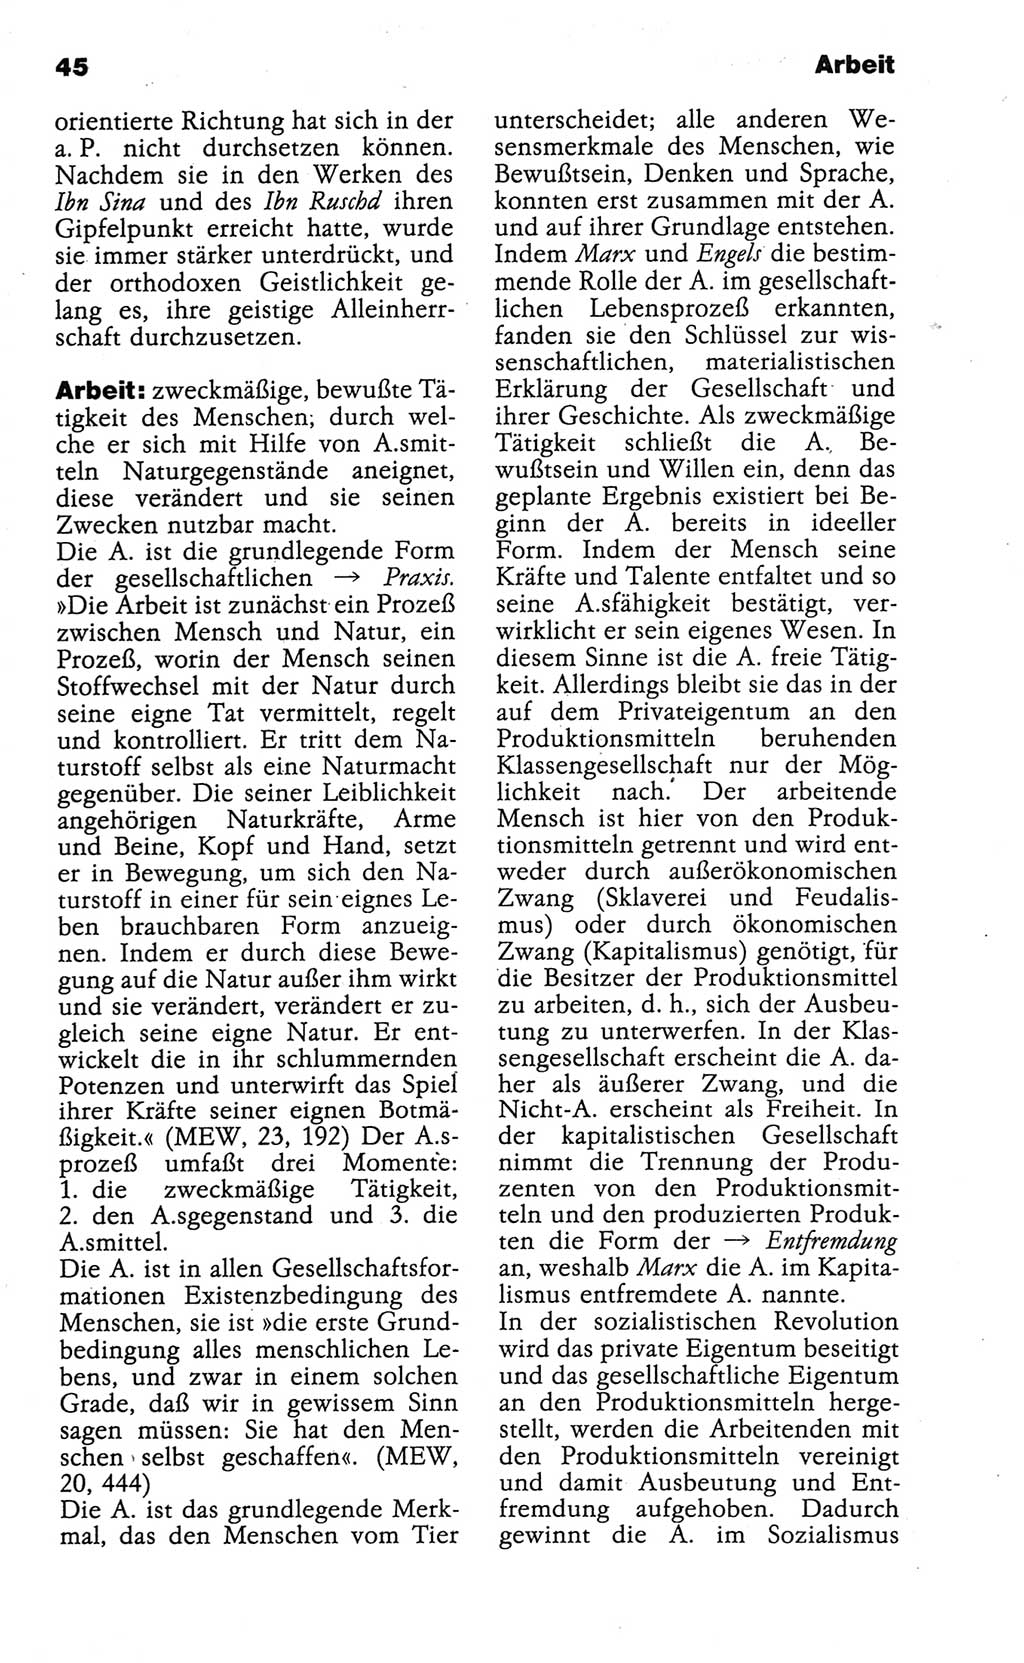 Wörterbuch der marxistisch-leninistischen Philosophie [Deutsche Demokratische Republik (DDR)] 1986, Seite 45 (Wb. ML Phil. DDR 1986, S. 45)